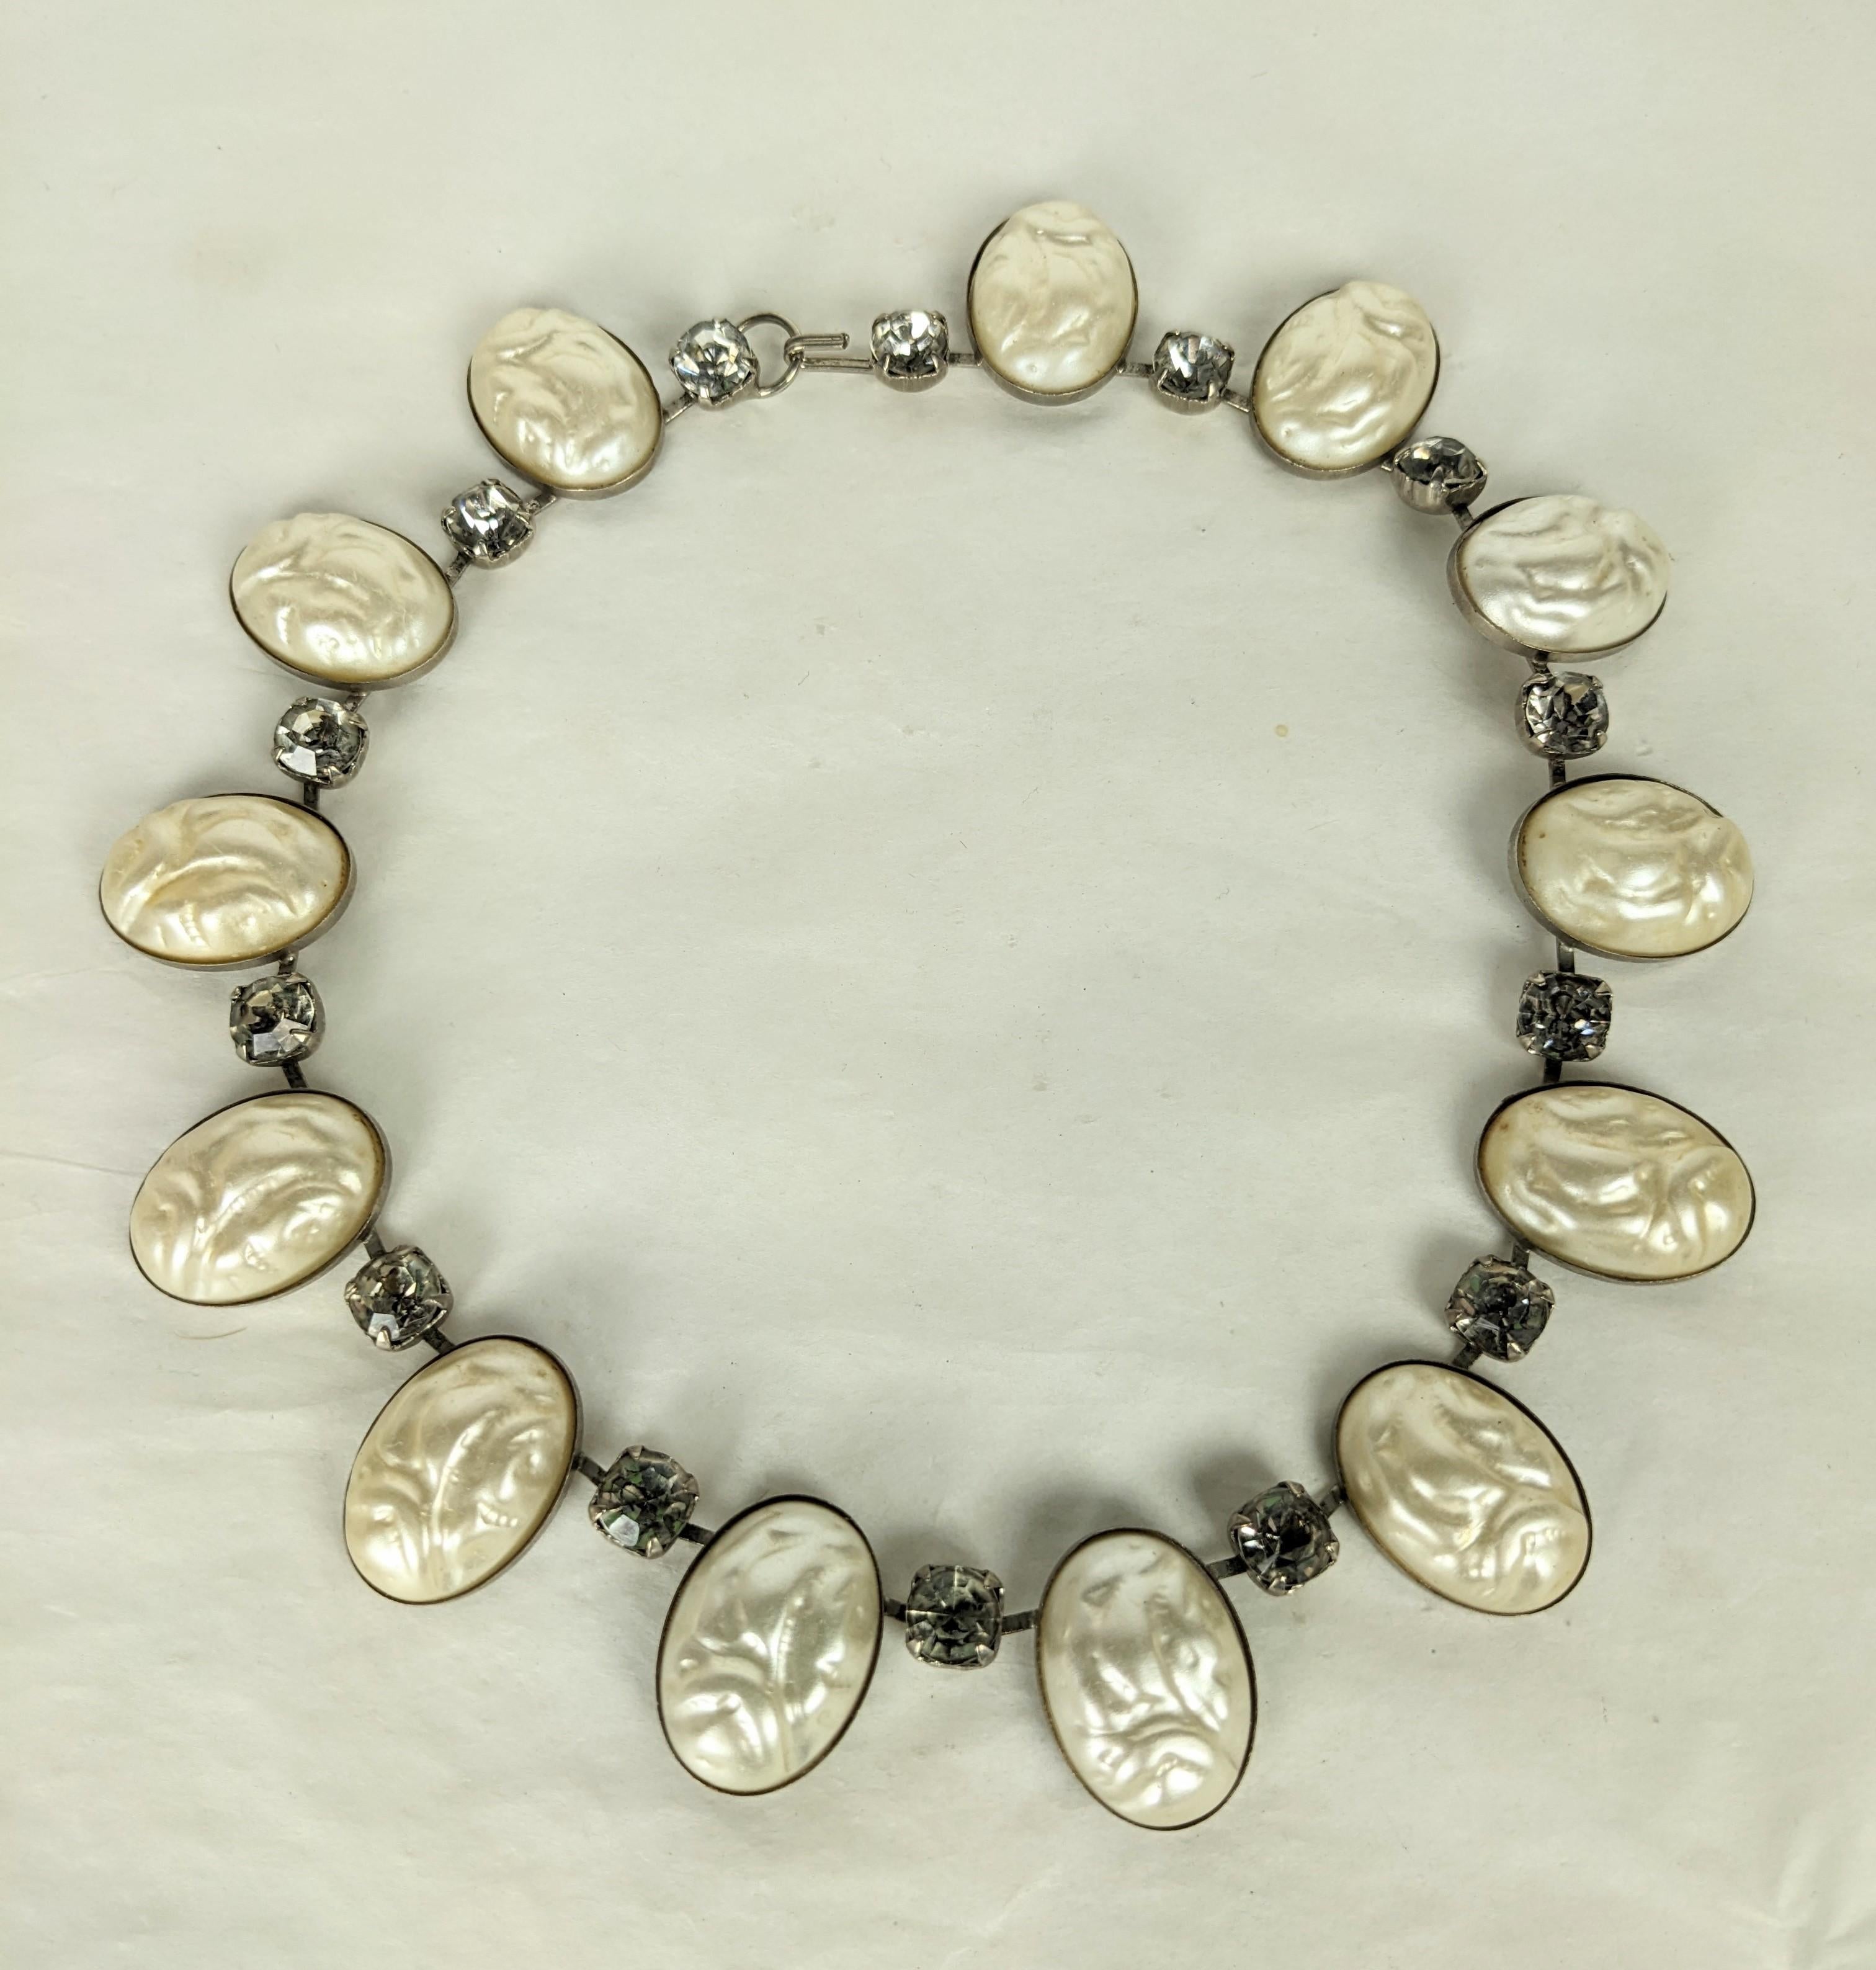 Insolite collier Mid Century en fausses perles avec cabochons de perles baroques et cristaux de fumée sur un fil articulé. Finition en rhodium. Le glamour opulent des années 1950. USA. 16